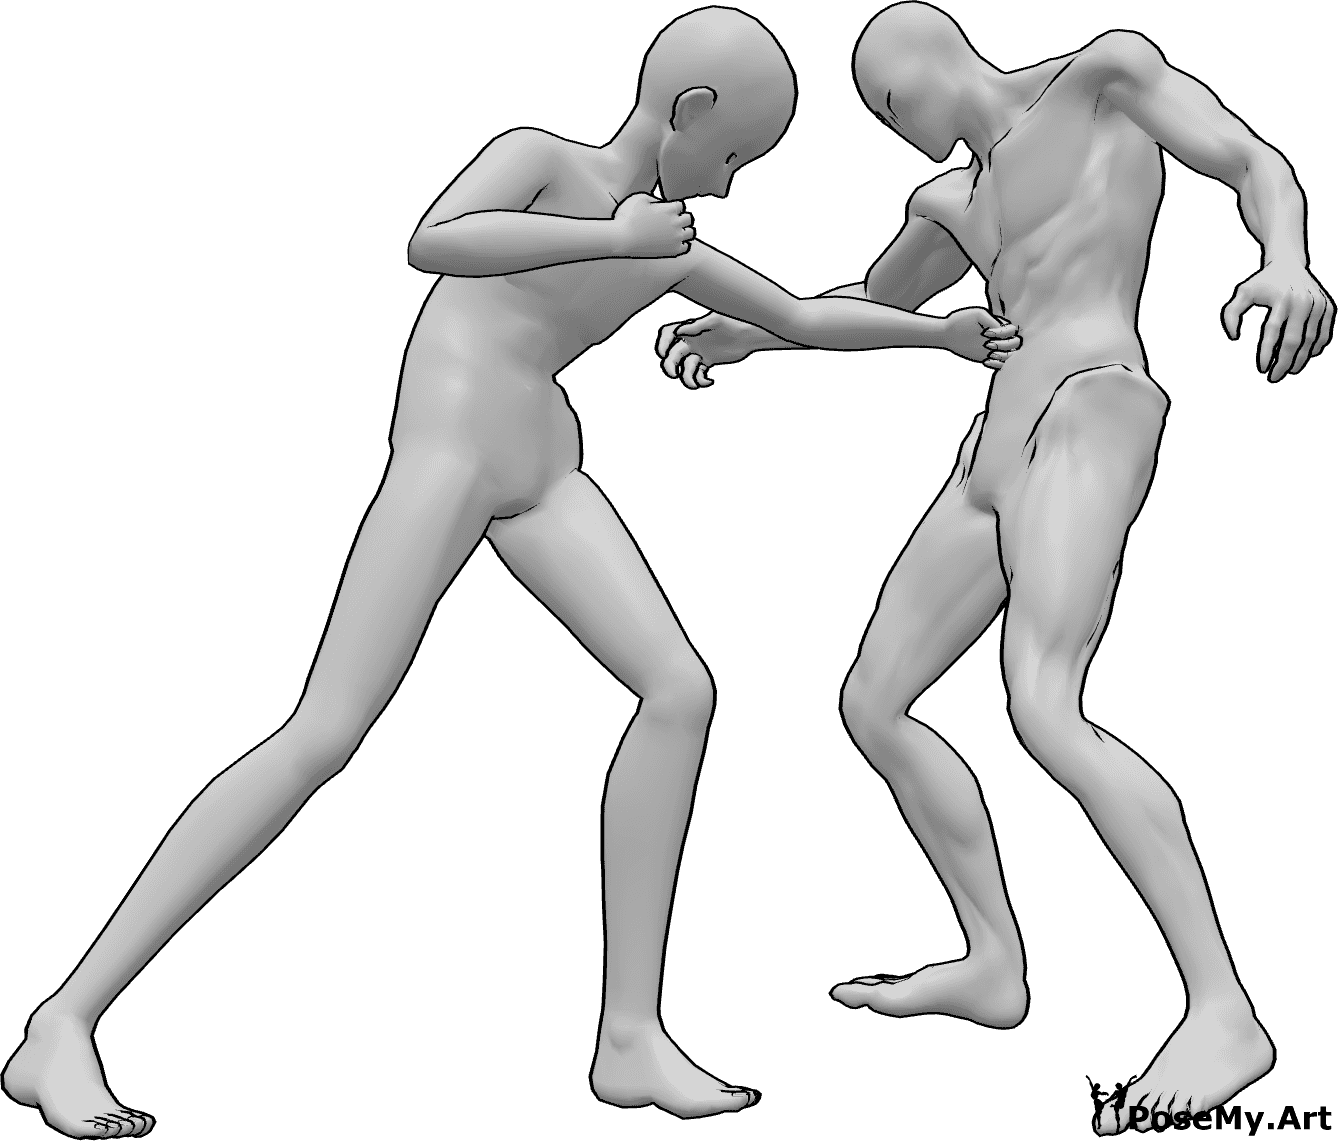 Riferimento alle pose- Posa del pugno allo stomaco in stile anime - L'uomo anonimo sta colpendo il nemico allo stomaco con la mano sinistra.